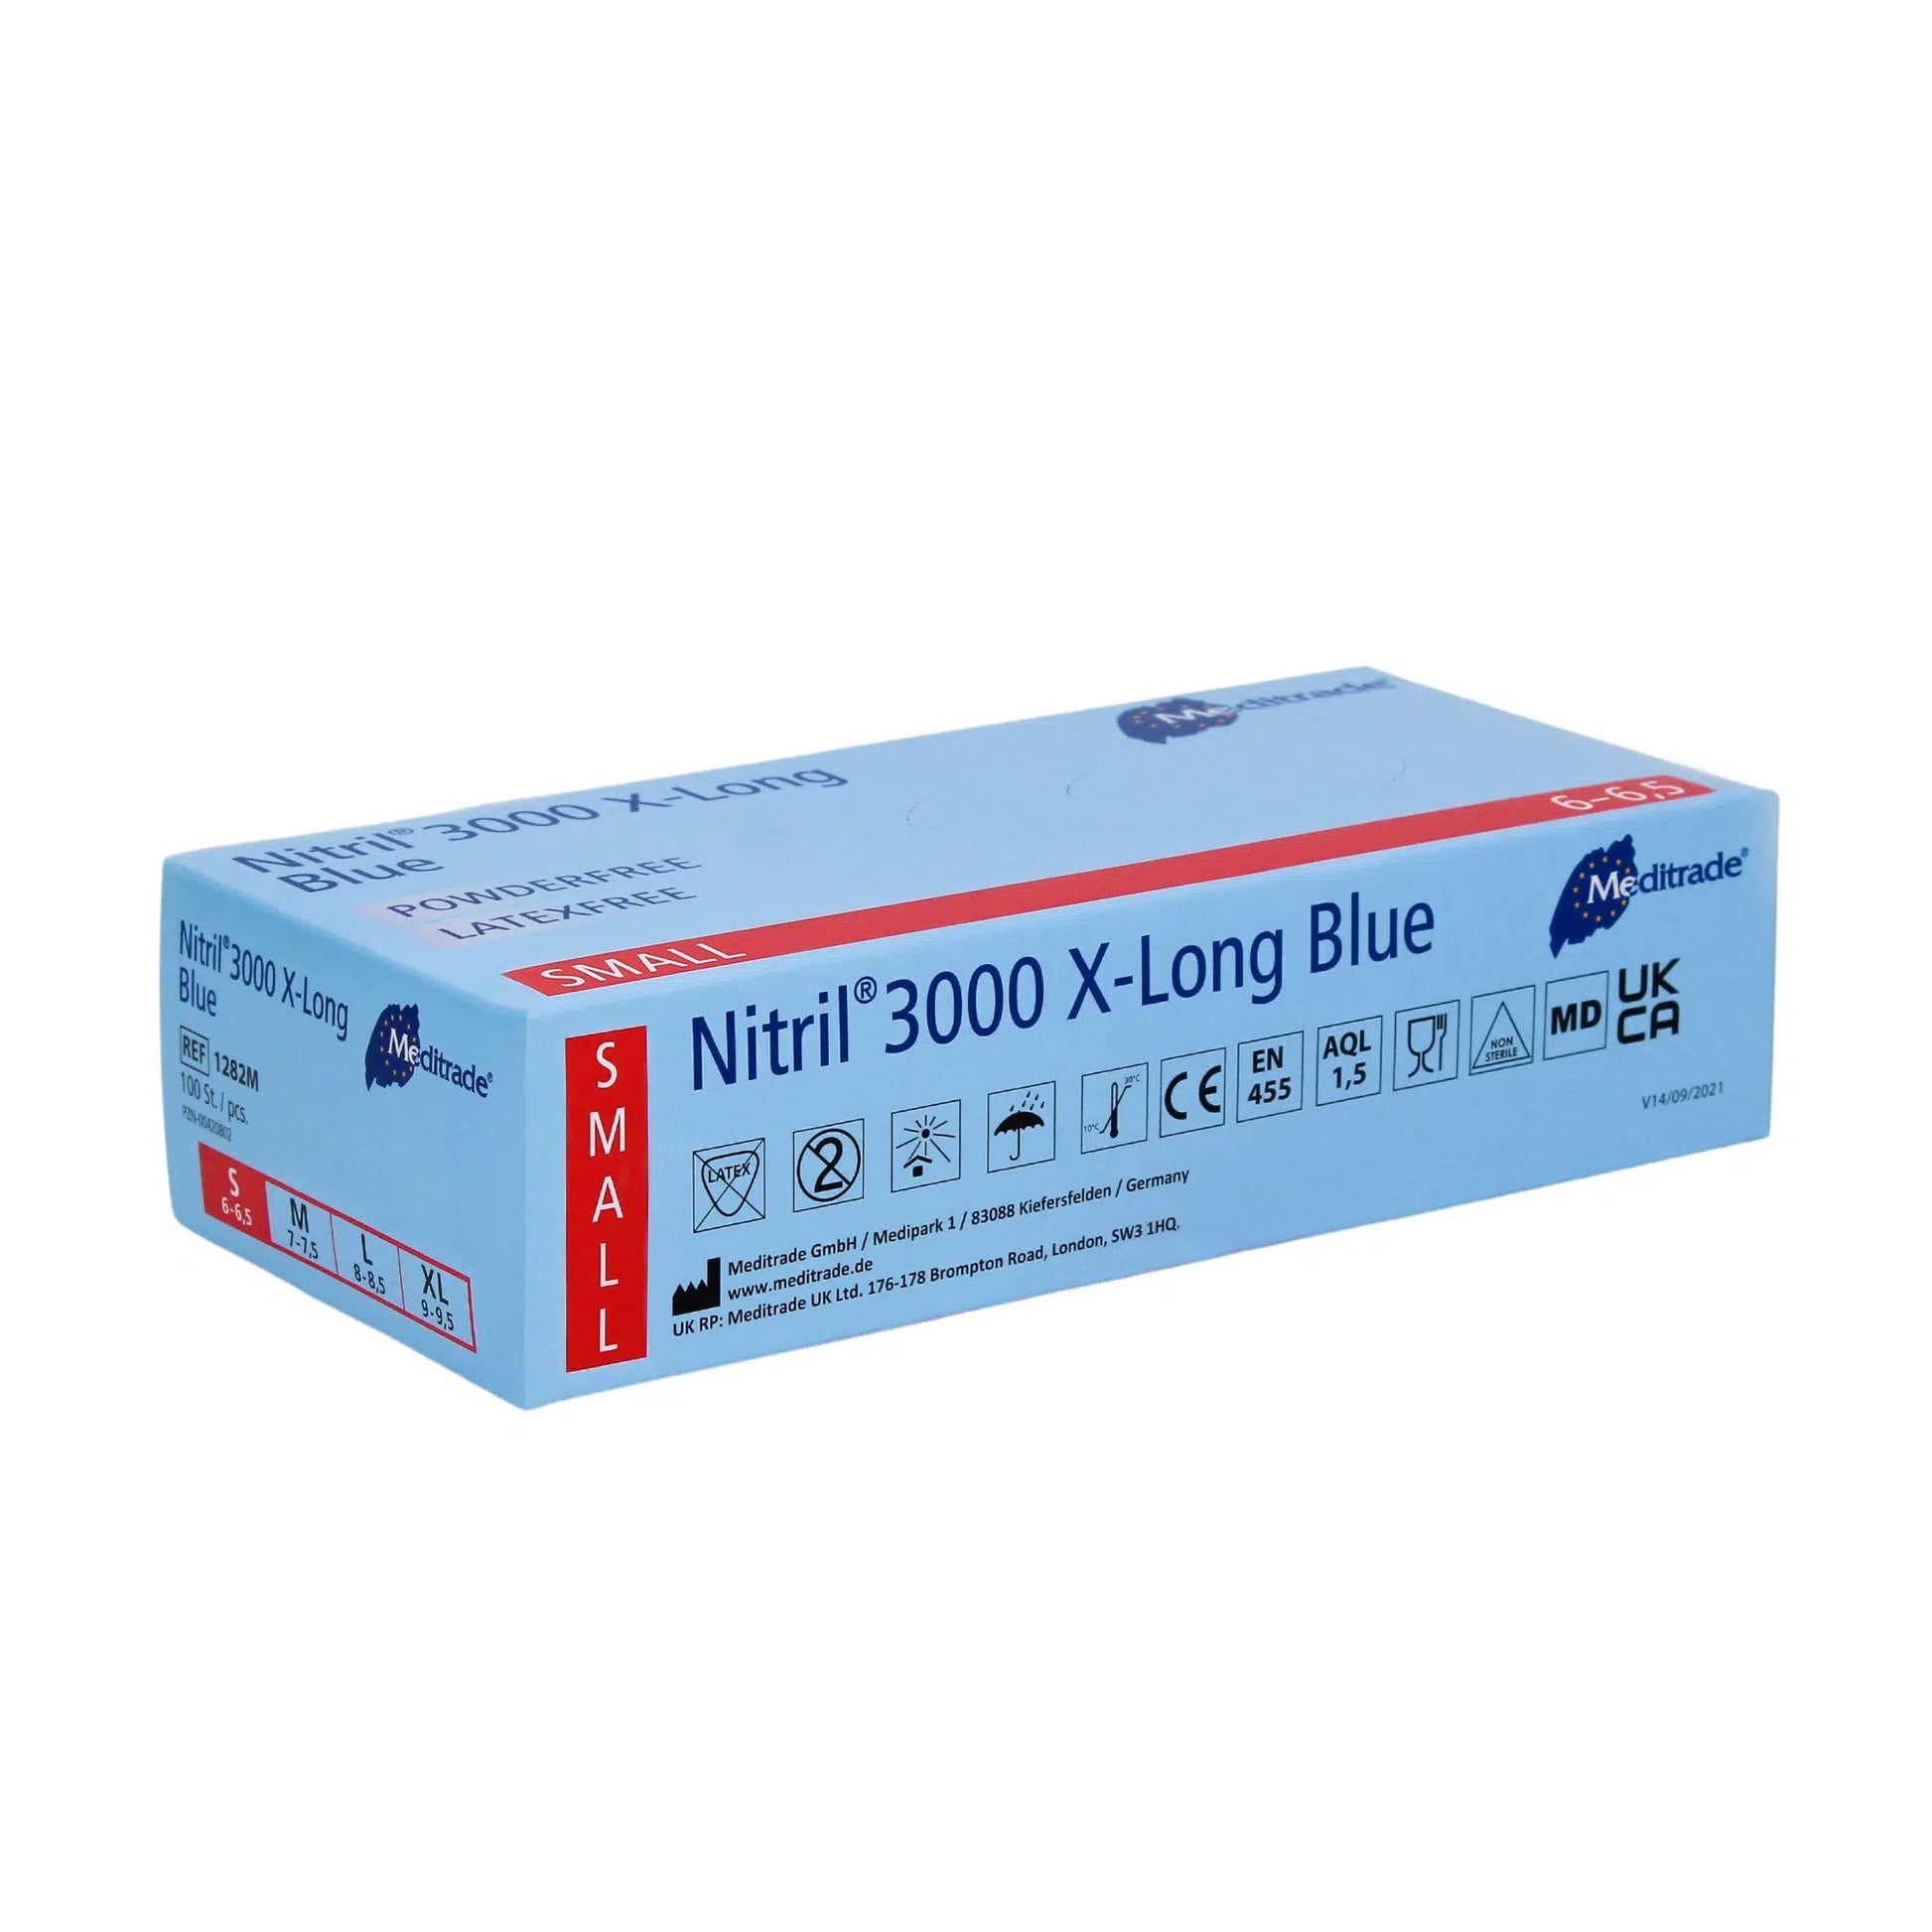 Eine Schachtel Meditrade Nitril® 3000 X-Long 100 Stk. Nitrilhandschuhe extralang, blau, klein auf weißem Hintergrund, mit Sicherheitszertifikaten und Produktdetails der Meditrade GmbH.